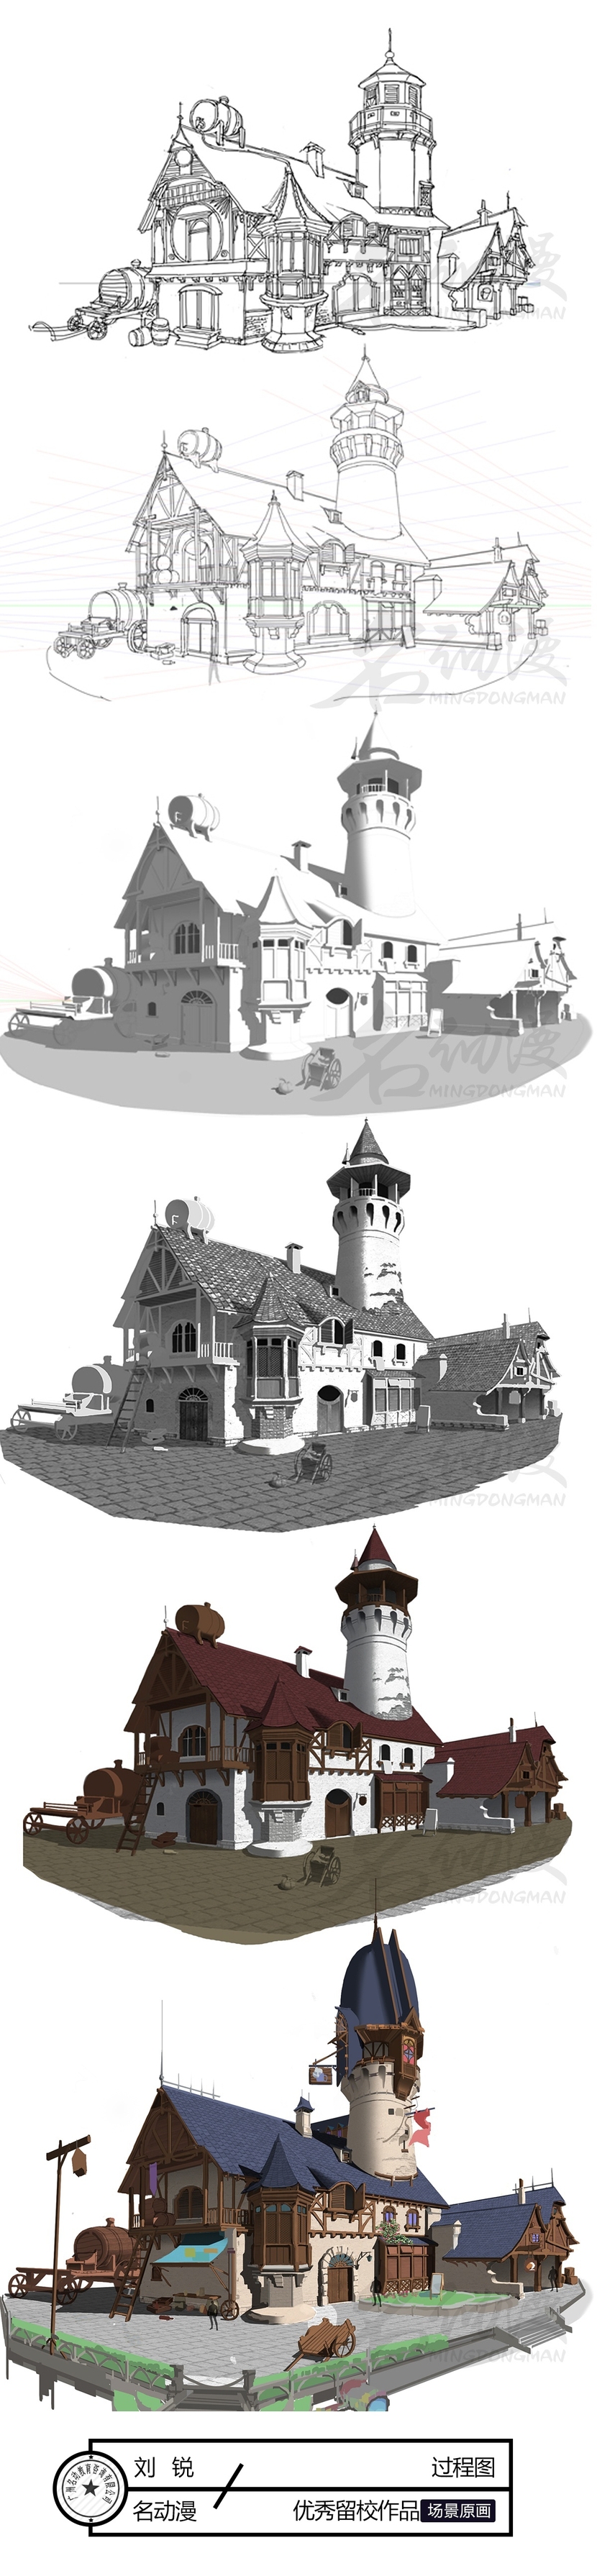 中世纪旅馆过程图插画图片壁纸